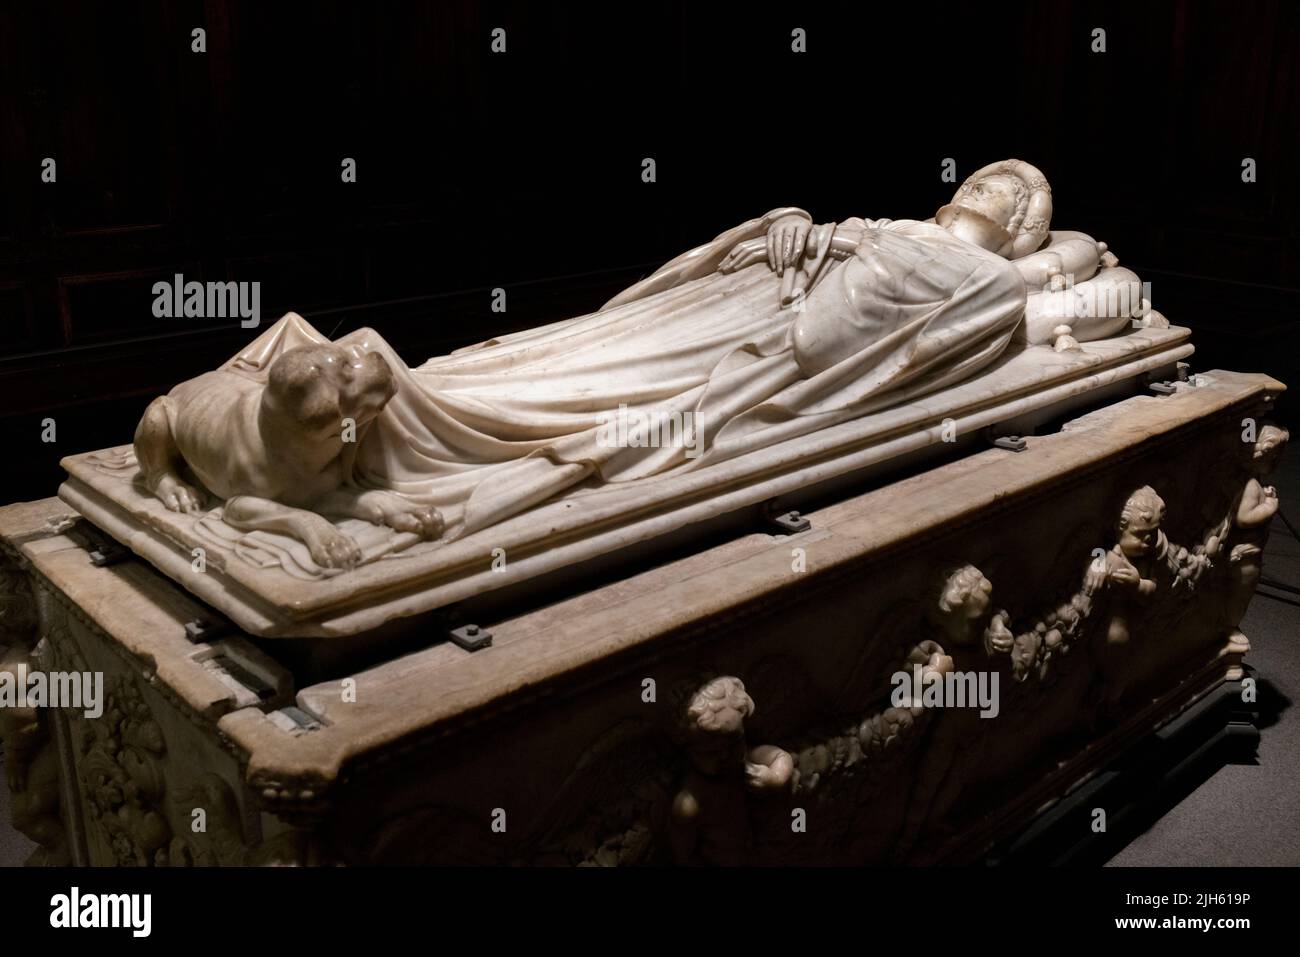 Monumento funerario di Ilaria del Carretto realizzato dallo scultore italiano Jacopo della quercia, c.. 1374 - 1438. Duomo San Martino. Cattedrale di San Martino. Foto Stock